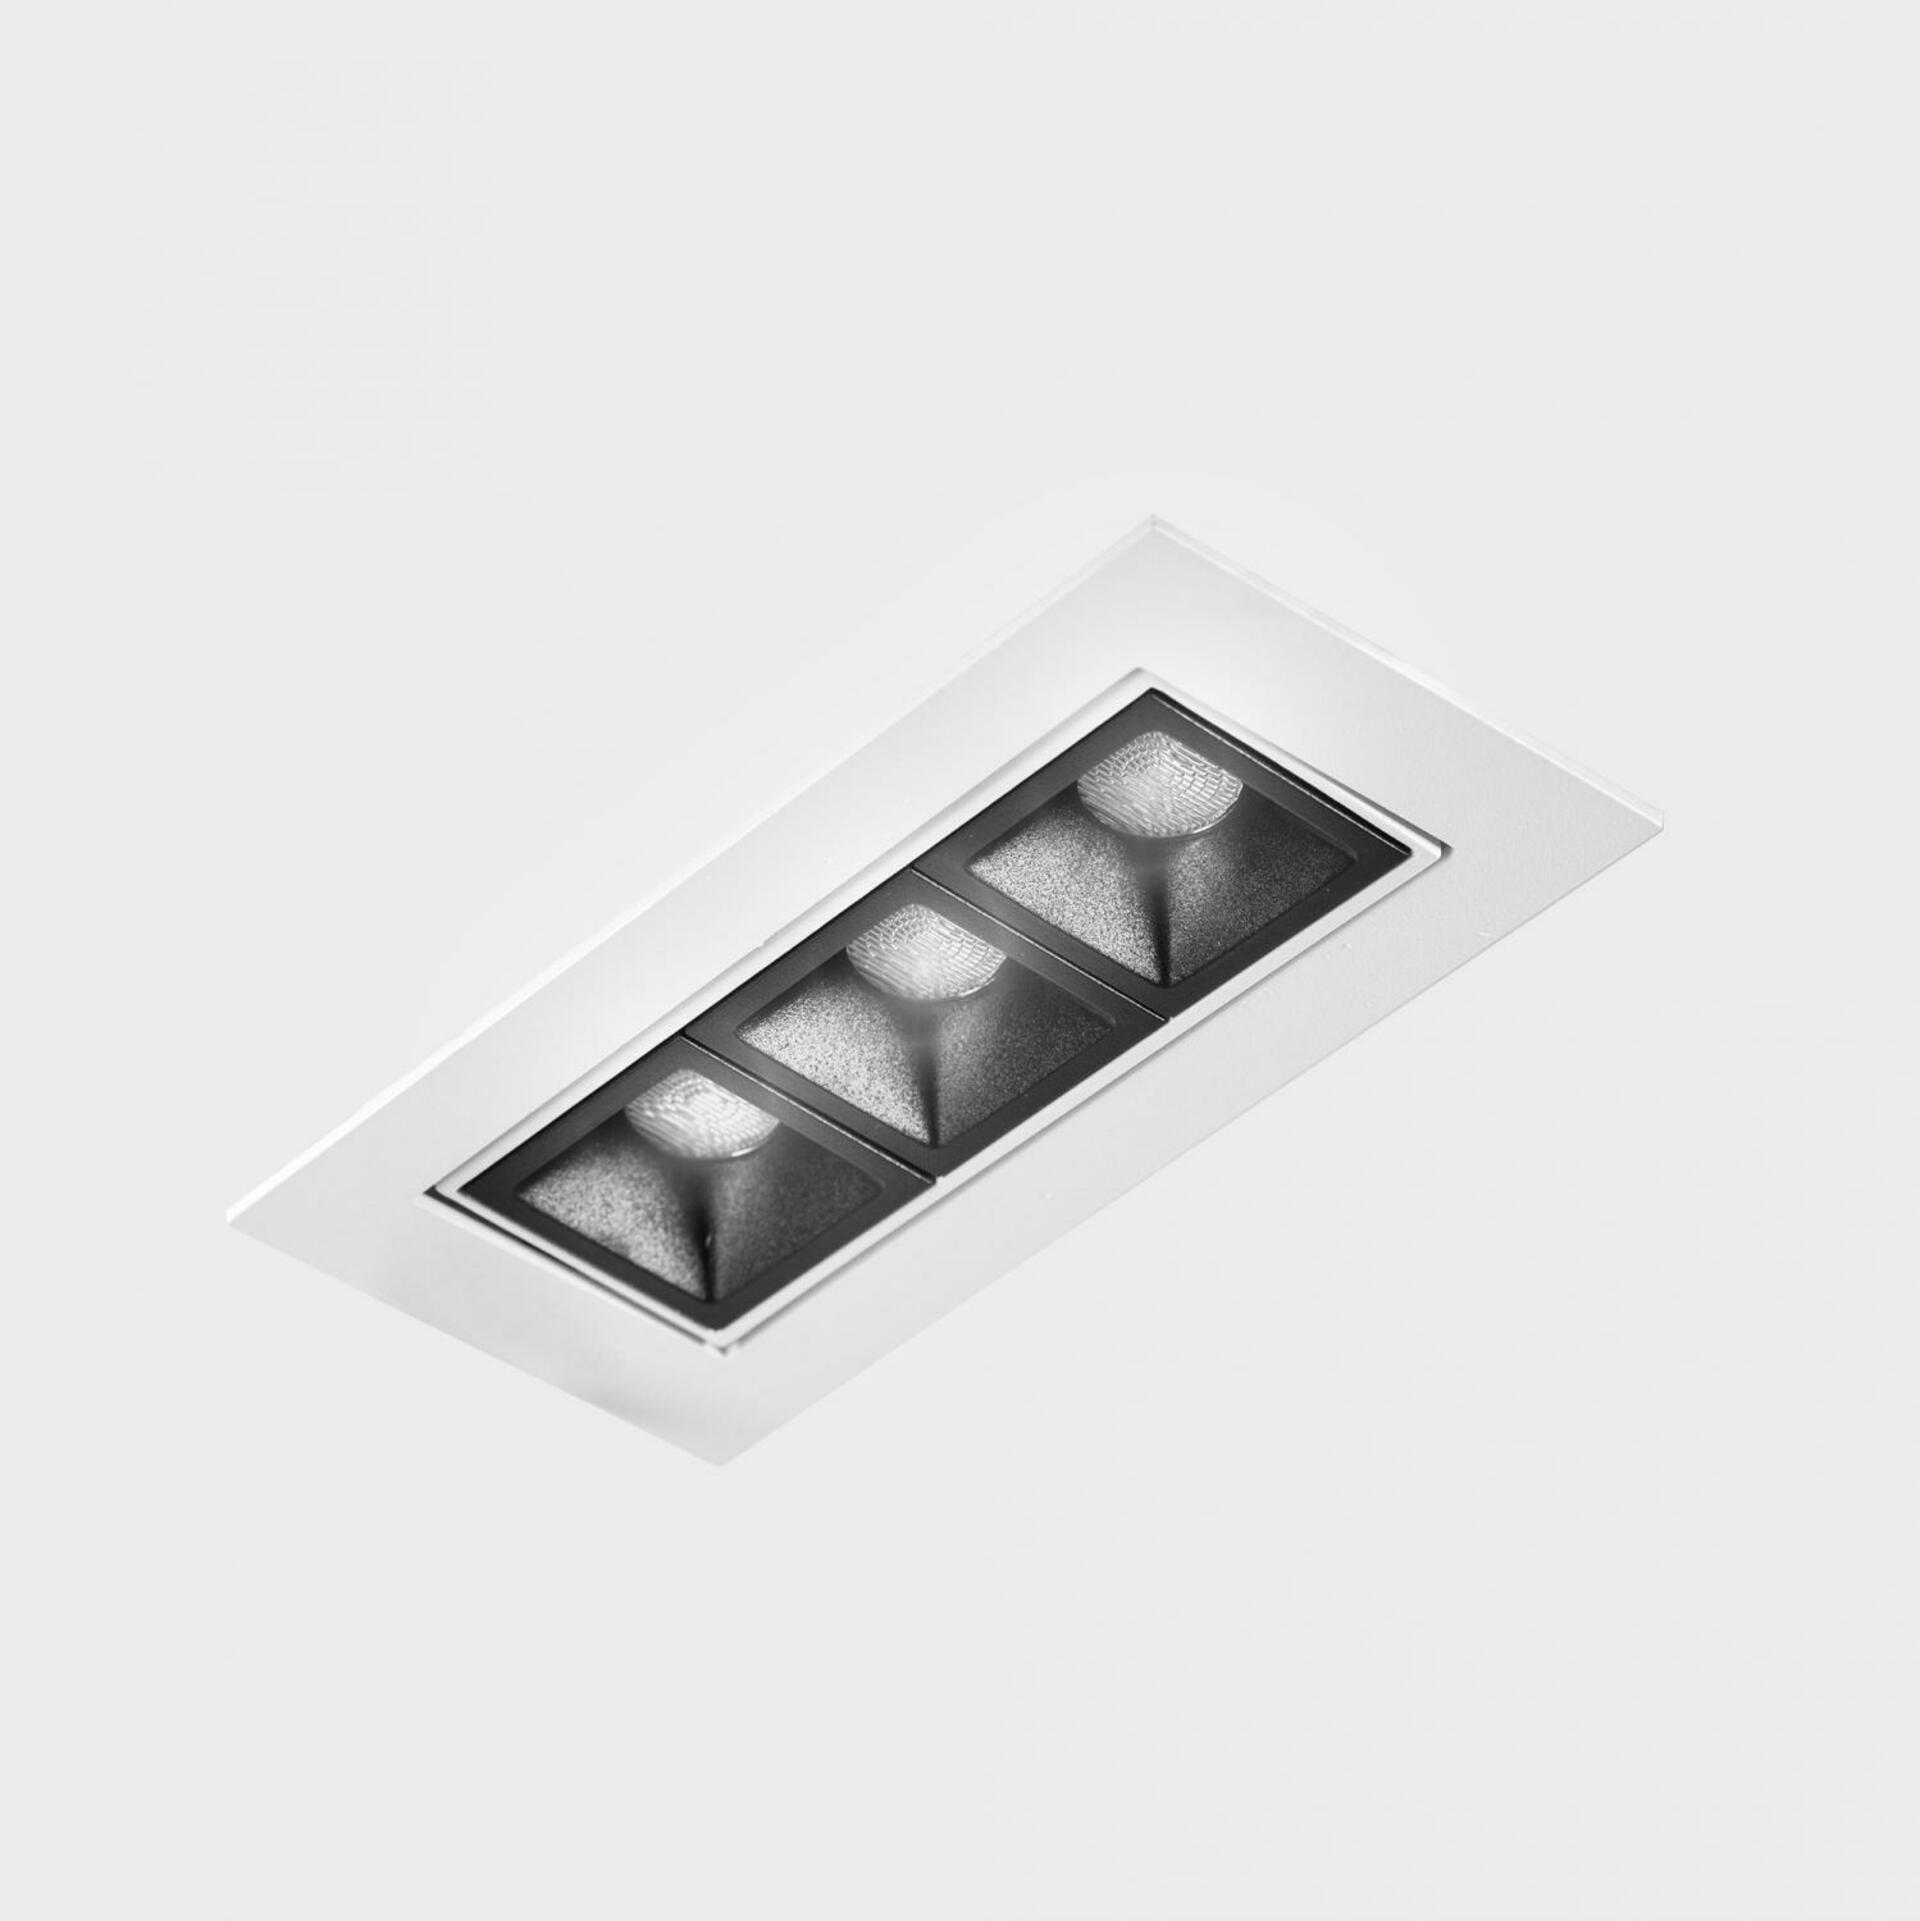 KOHL LIGHTING KOHL-Lighting NSES TILT zapuštěné svítidlo s rámečkem 123x58 mm bílá-černá 6 W CRI 90 3000K DALI